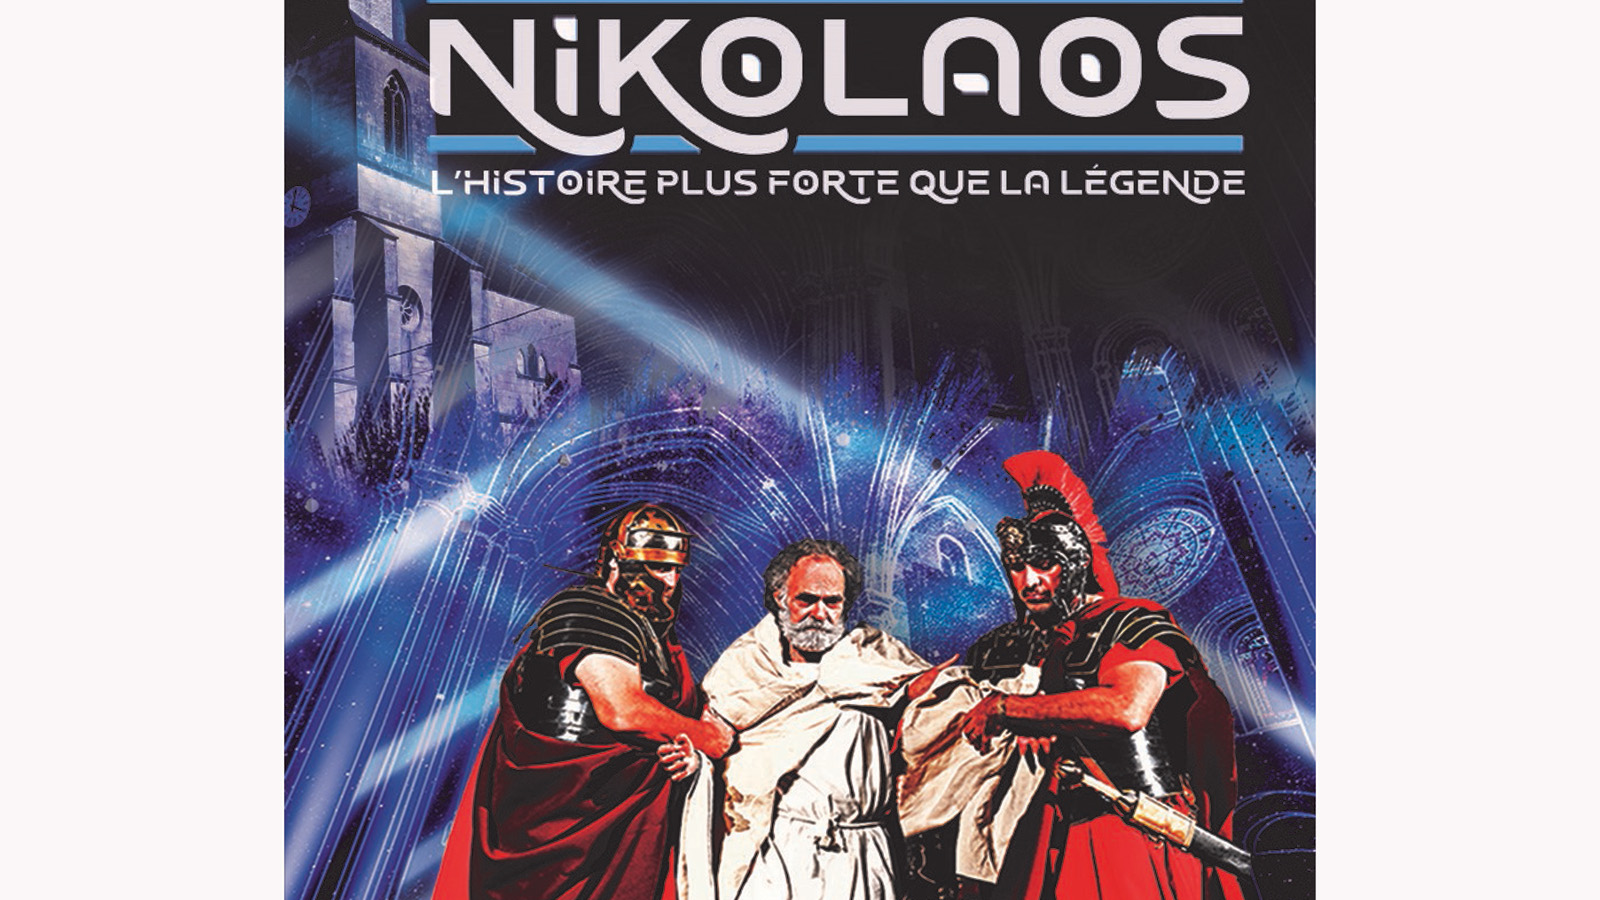 Nikolaos, l’histoire plus forte que la légende : un spectacle grandiose